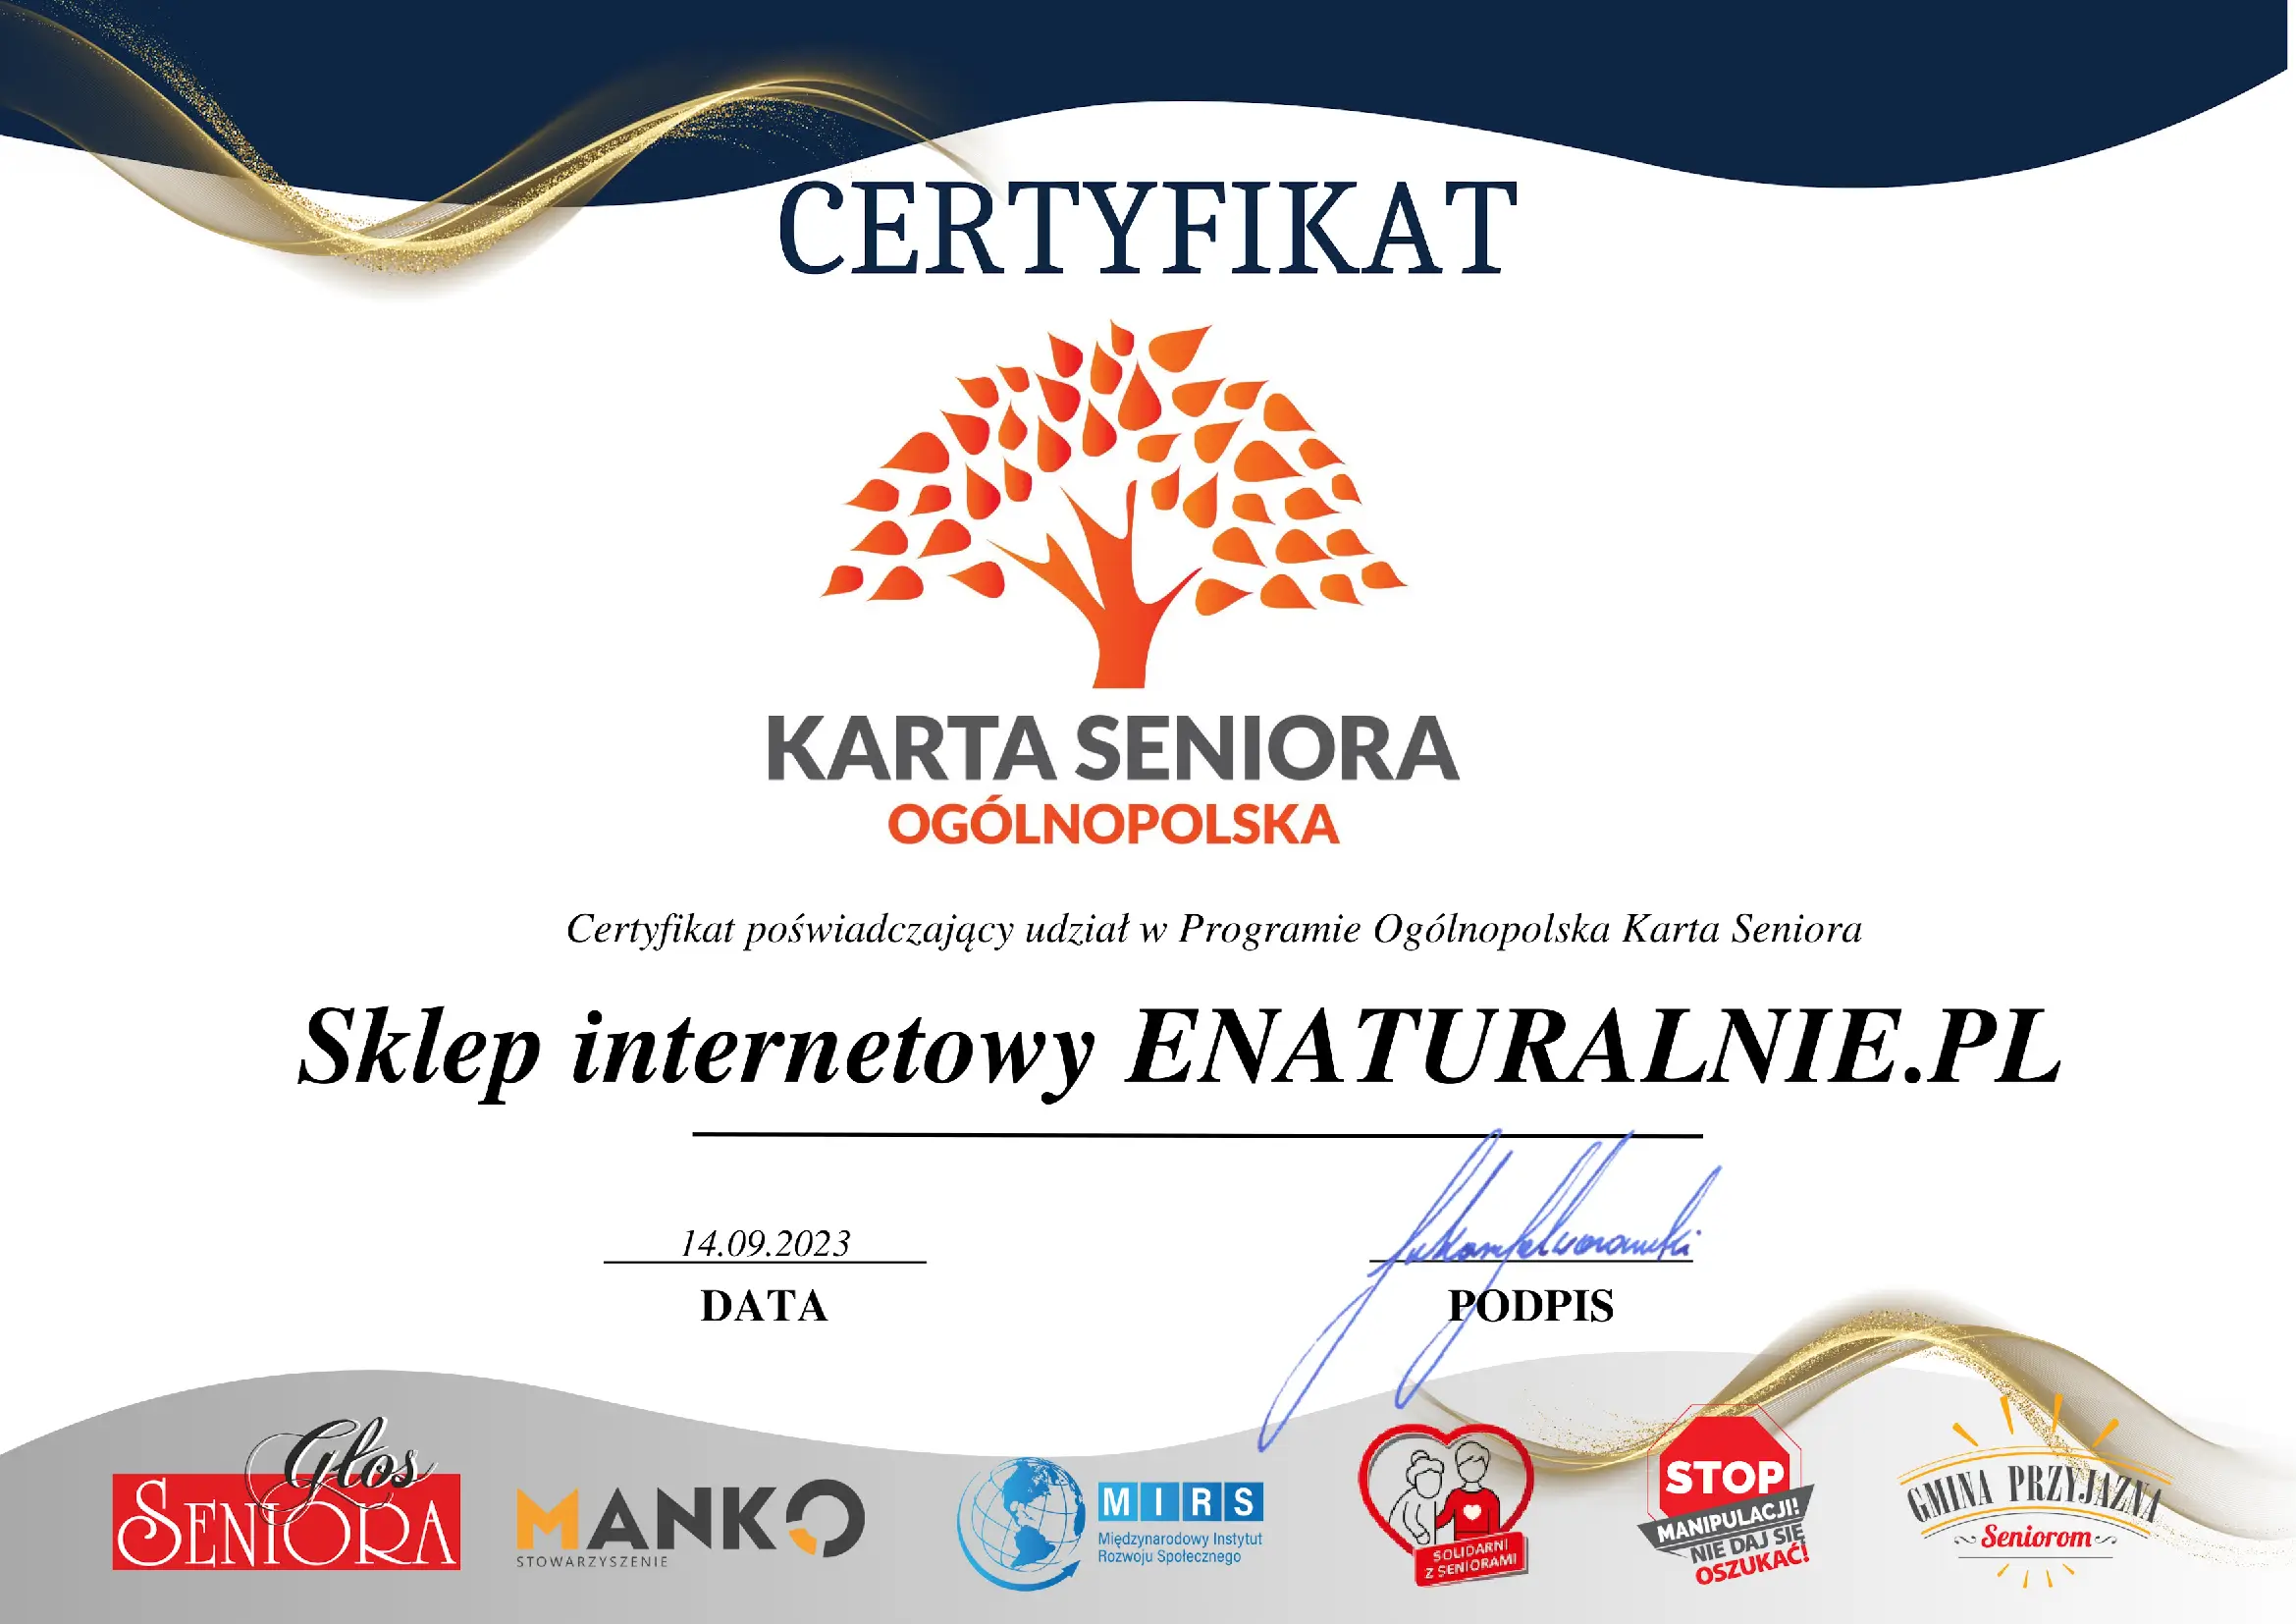 Certyfikat Karta Seniora Enaturalnie.pl